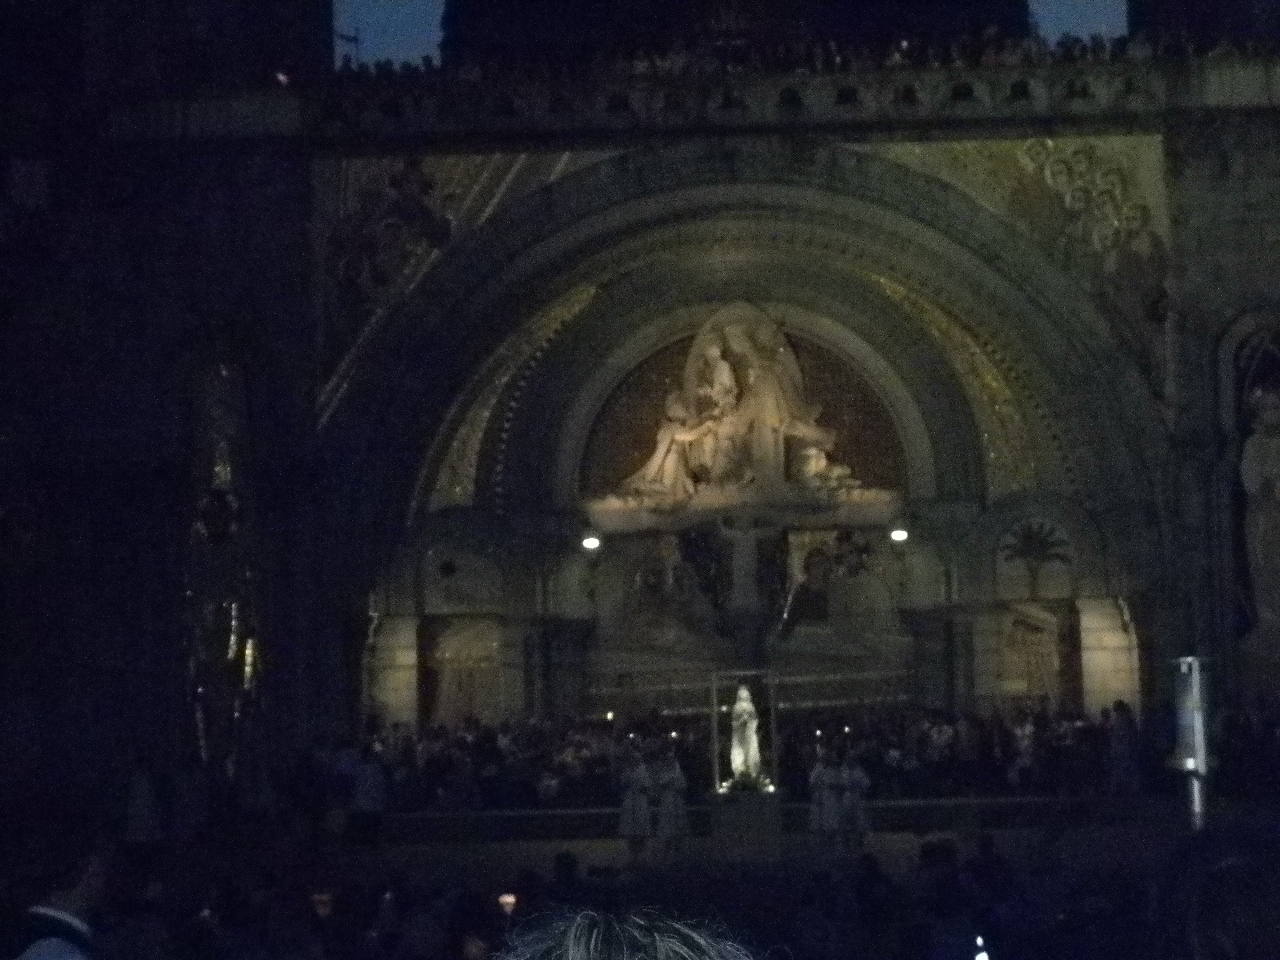 La statue illuminée est déposée devant la basilique du Rosaire. On prie.